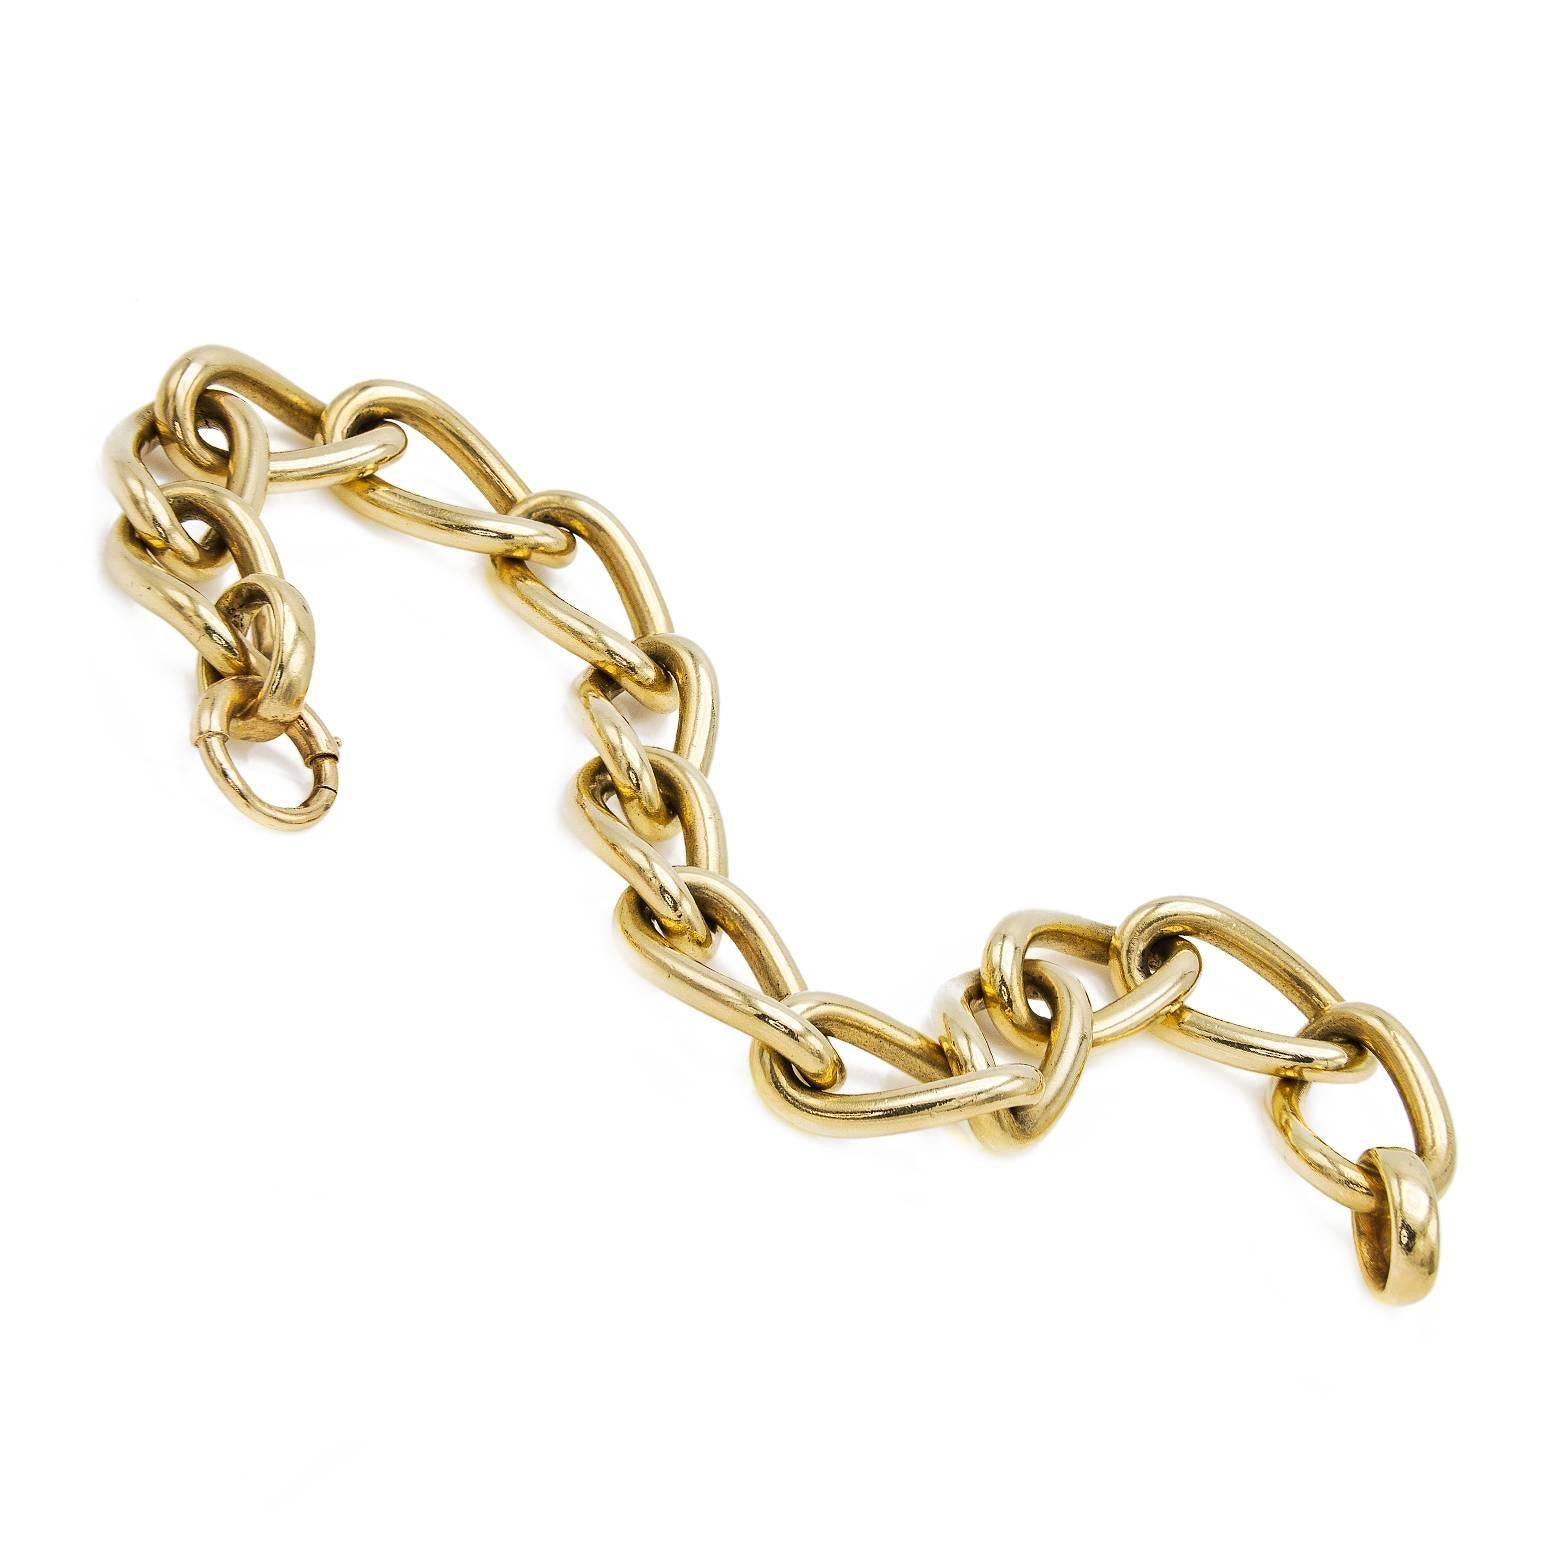 14k white gold twisted link bracelet